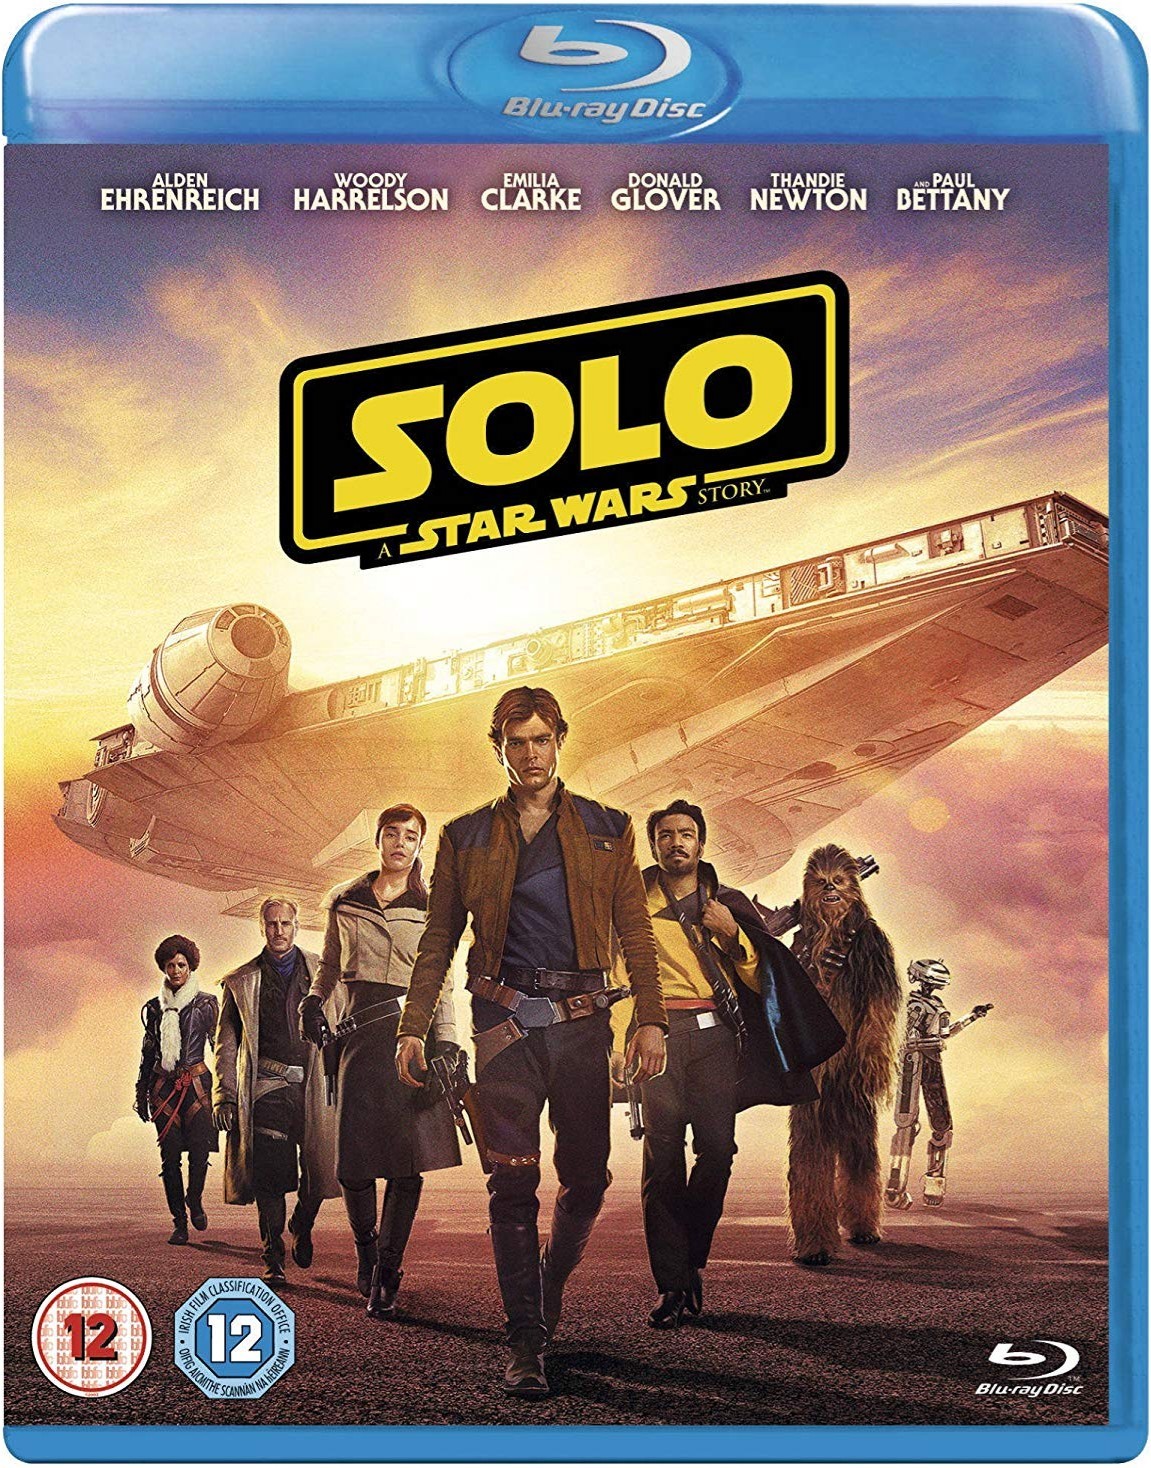 [游侠索罗·星球大战外传].Solo.A.Star.Wars.Story.2018.UHD.BluRay.2160p.HEVC.TrueHD.7.1-BeyondHD    54.81G-3.jpg